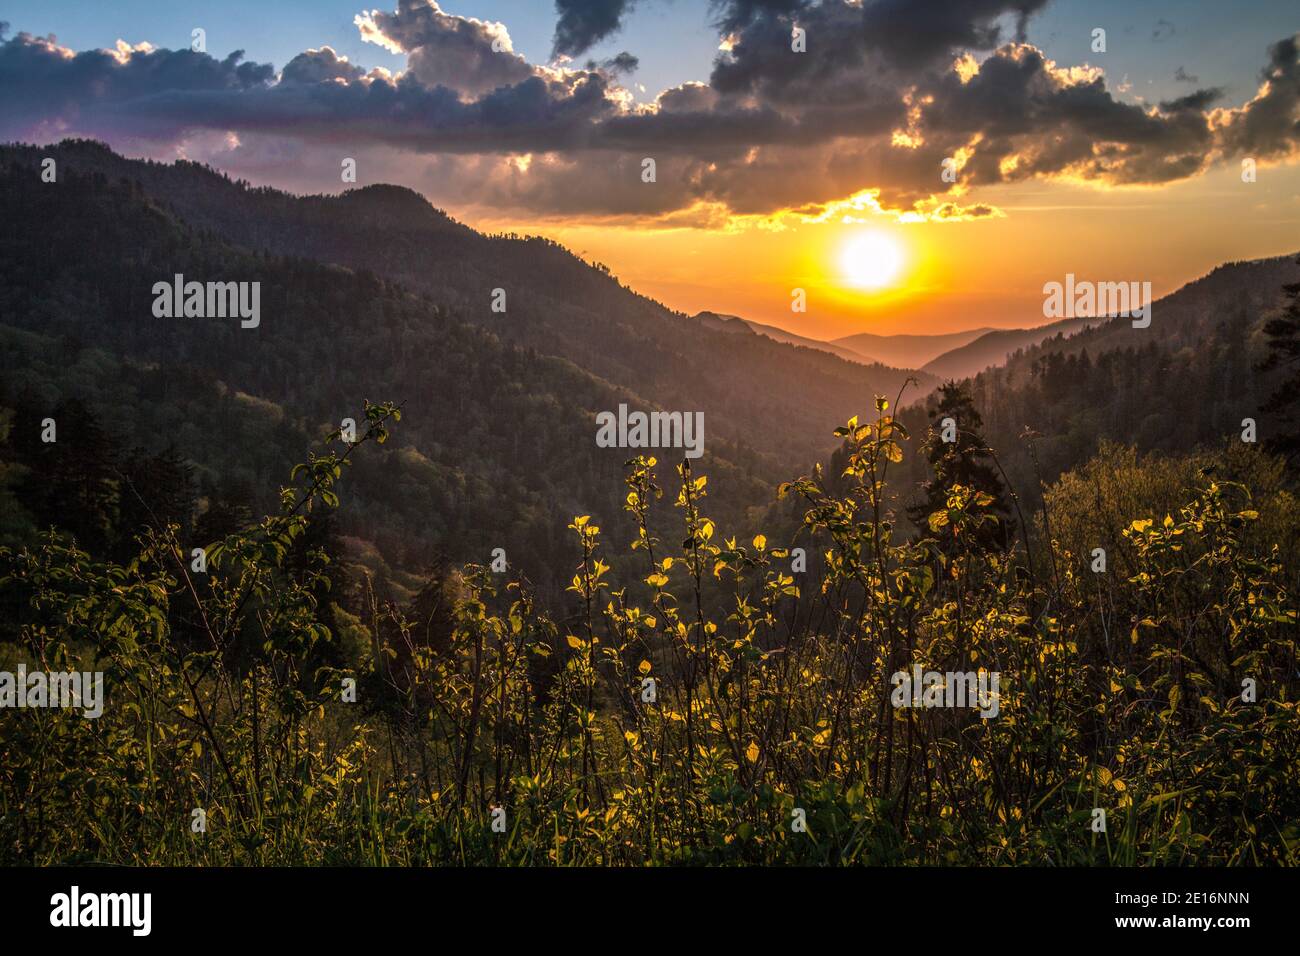 Superbe paysage de coucher de soleil sur les montagnes Smoky. Coucher de soleil depuis une Blue Ridge Parkway avec vue sur les Great Smoky Mountains à l'horizon. Banque D'Images